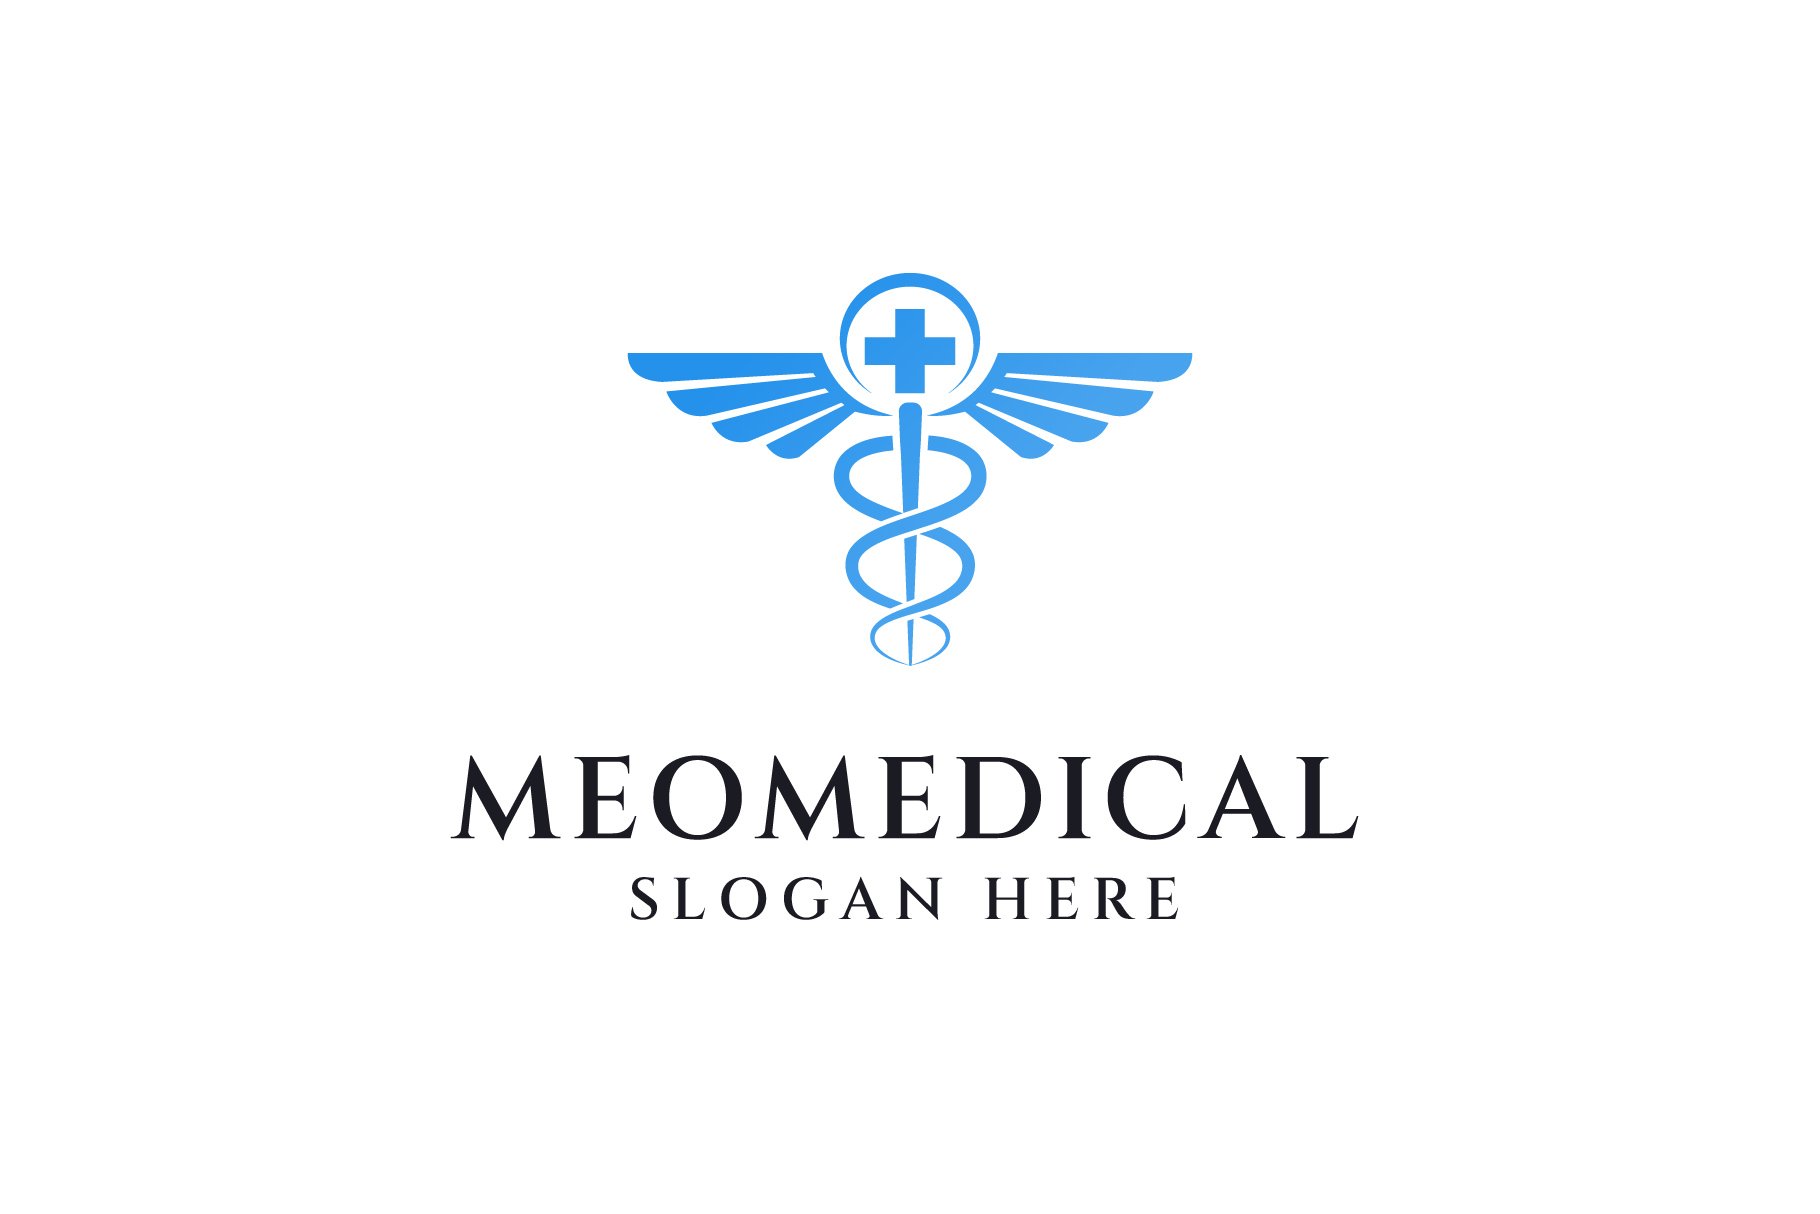 Medical logo design cover image.